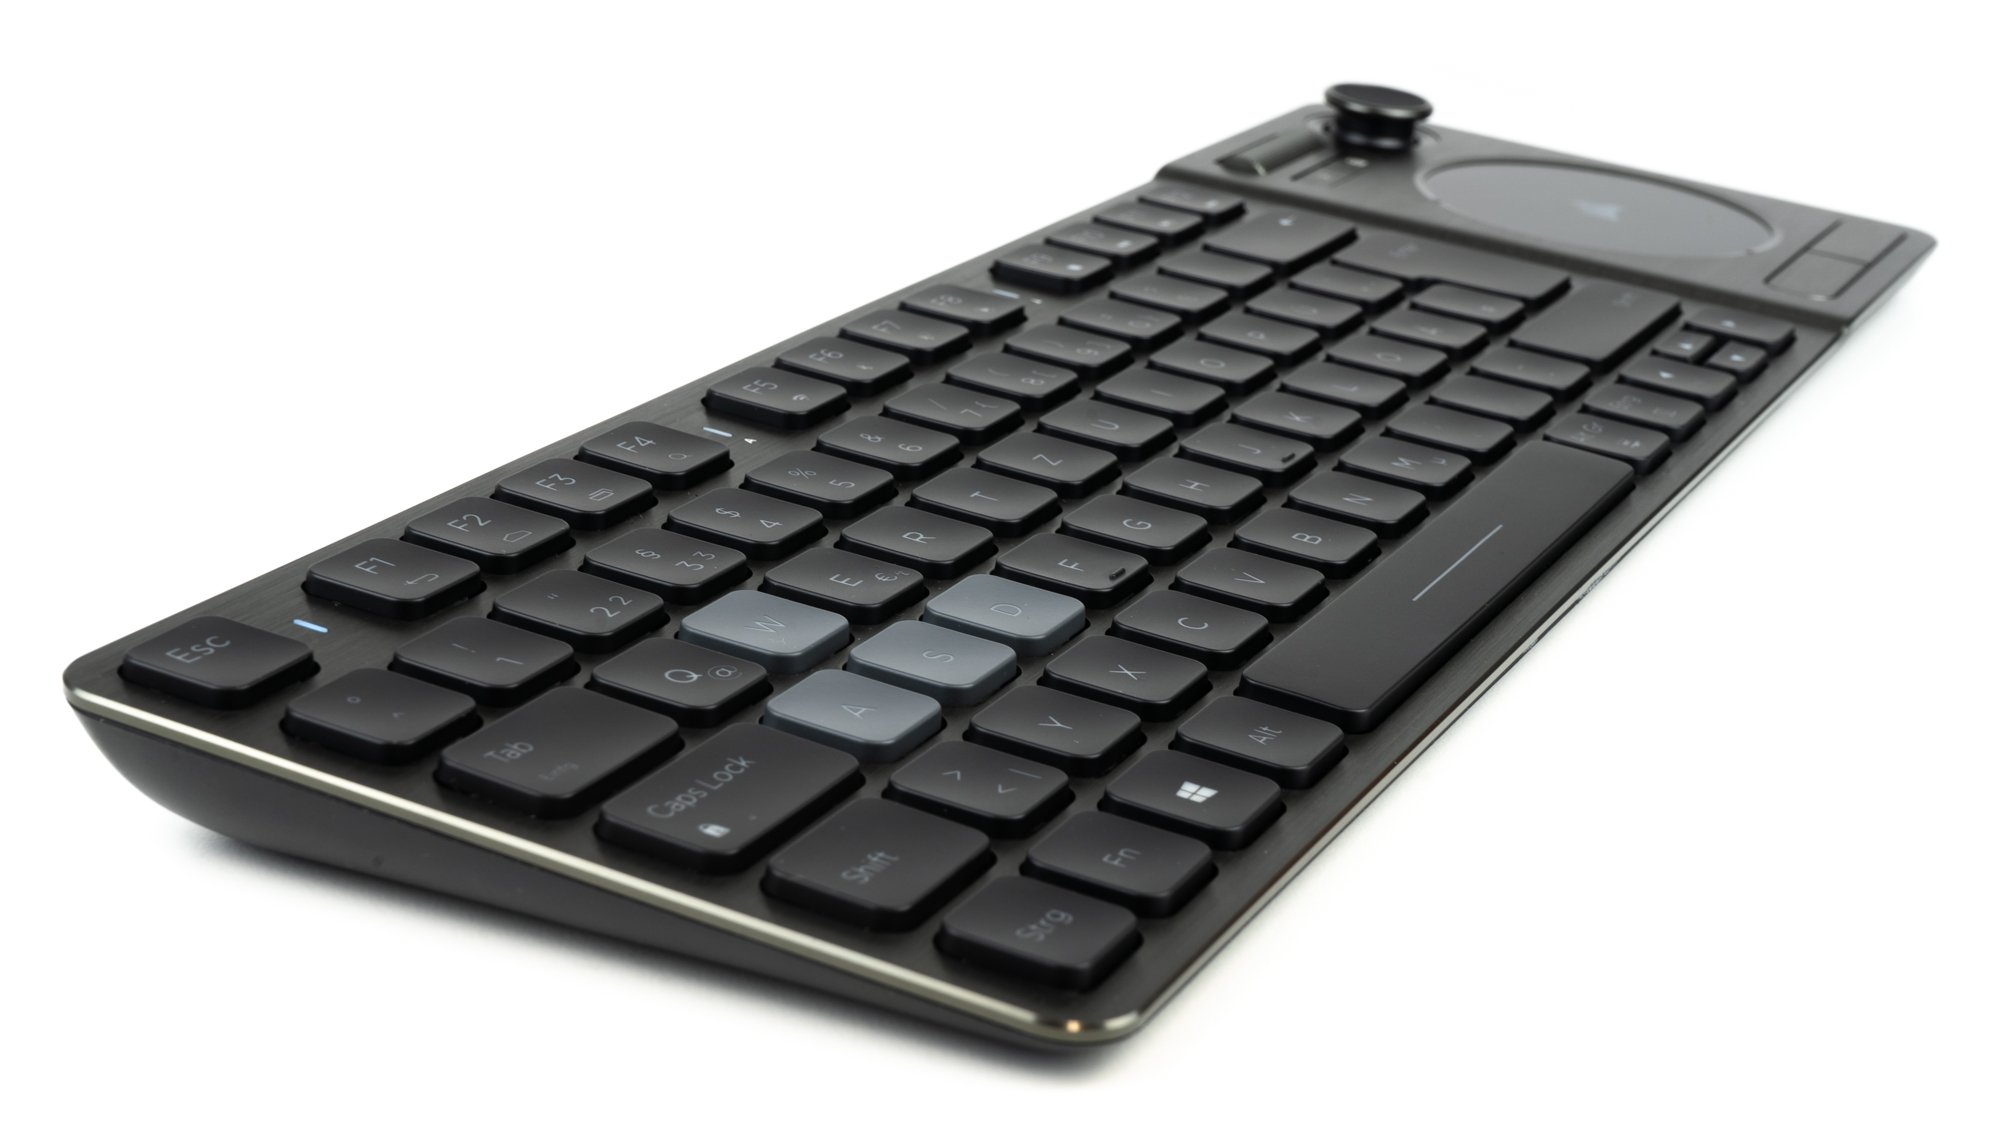 Cosair-K83-Wireless-Keyboard-7